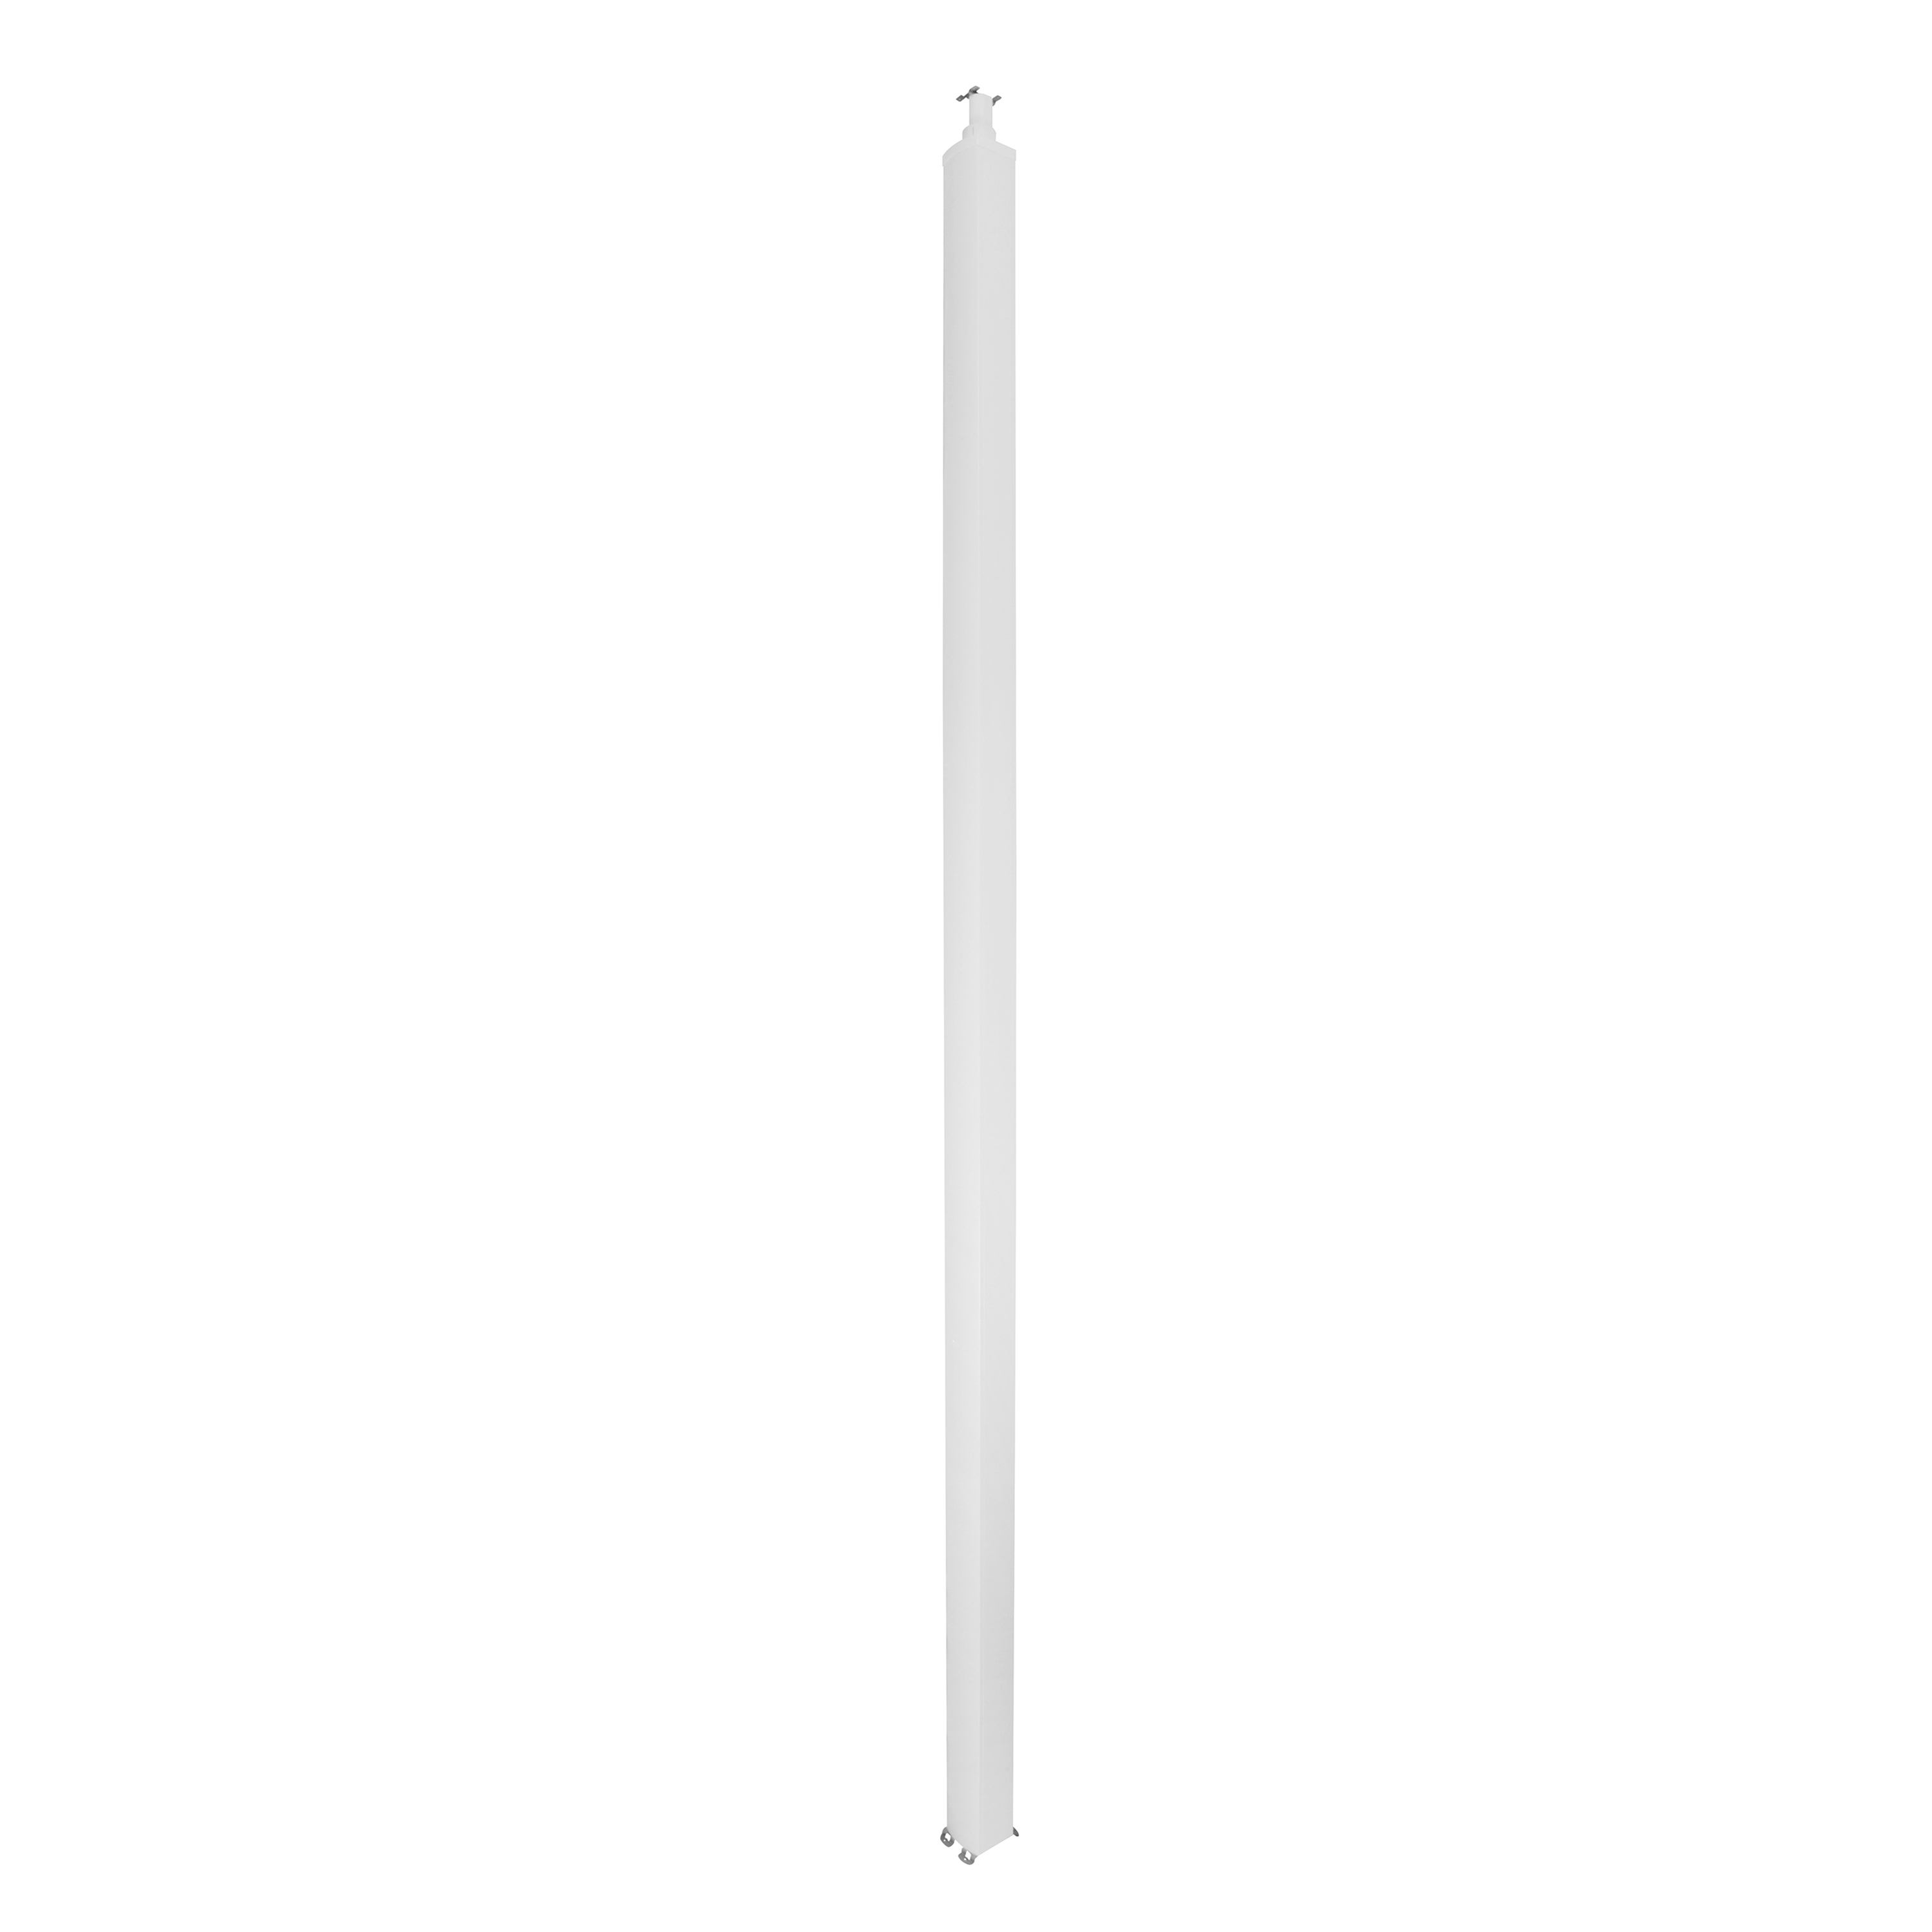 Универсальная колонна алюминиевая с крышкой из алюминия 2 секции, высота 4,02 метра, с возможностью увеличения высоты до 5,3 метра, цвет белый 653133 Legrand